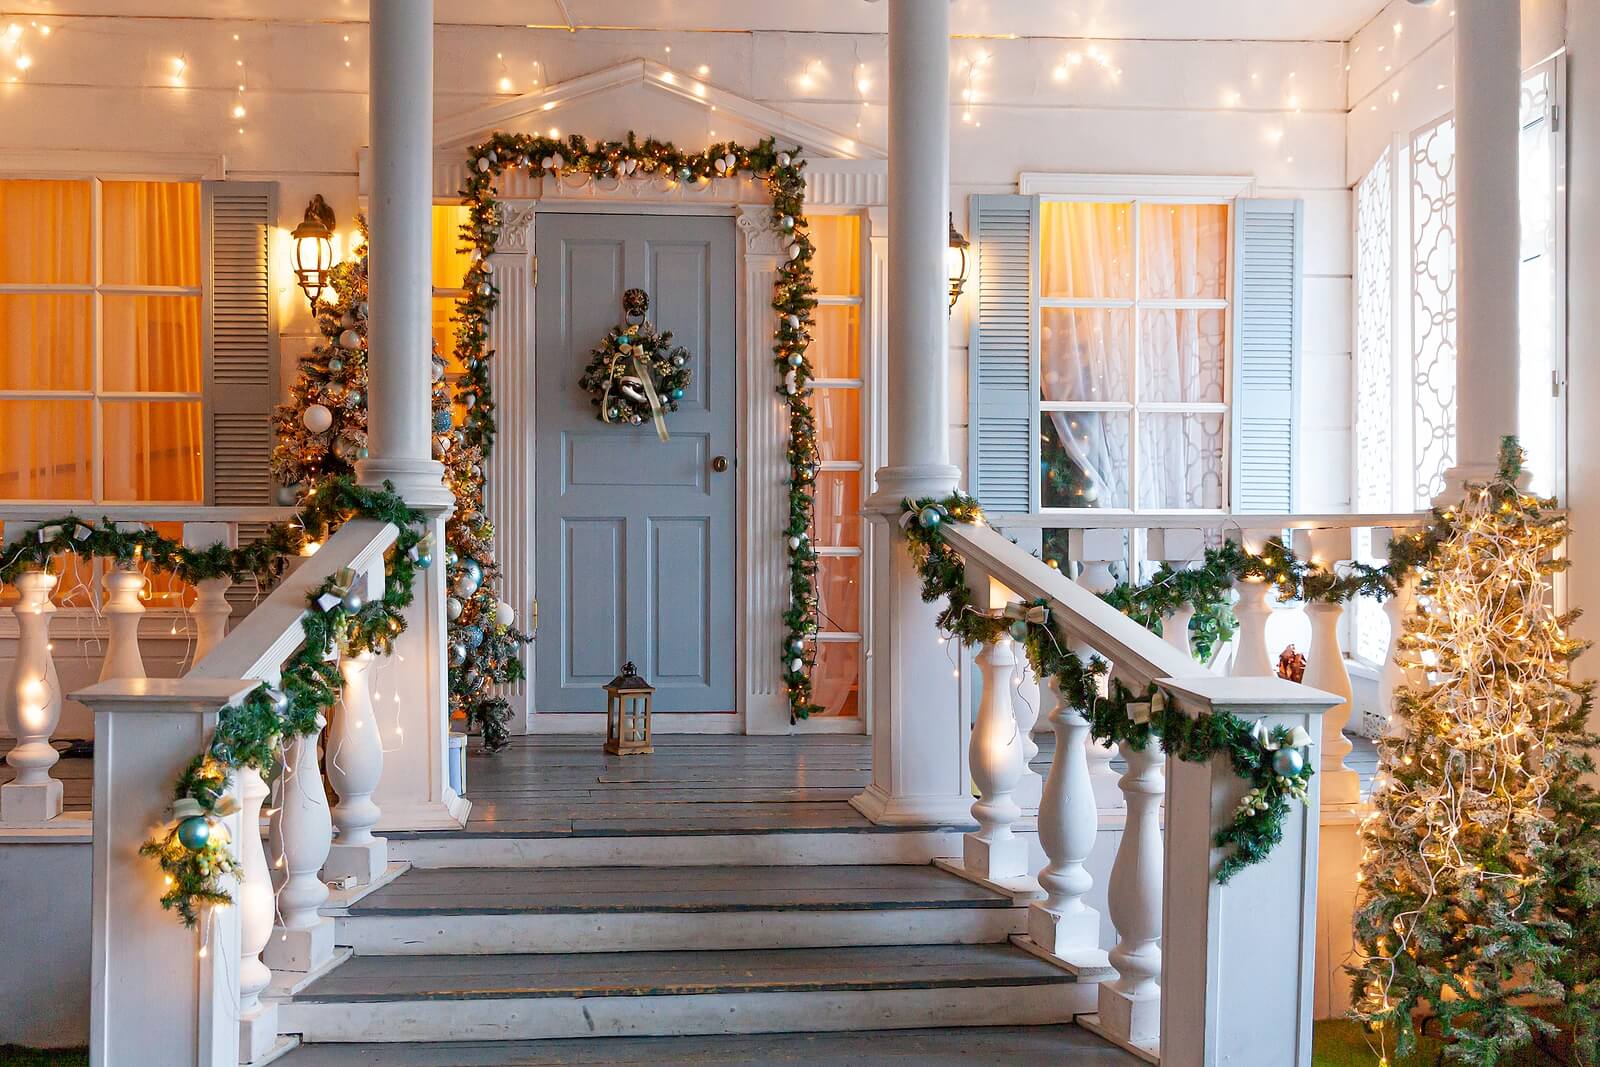 Casa decorada por Navidad porque hay relación entre la decoración navideña y la felicidad.